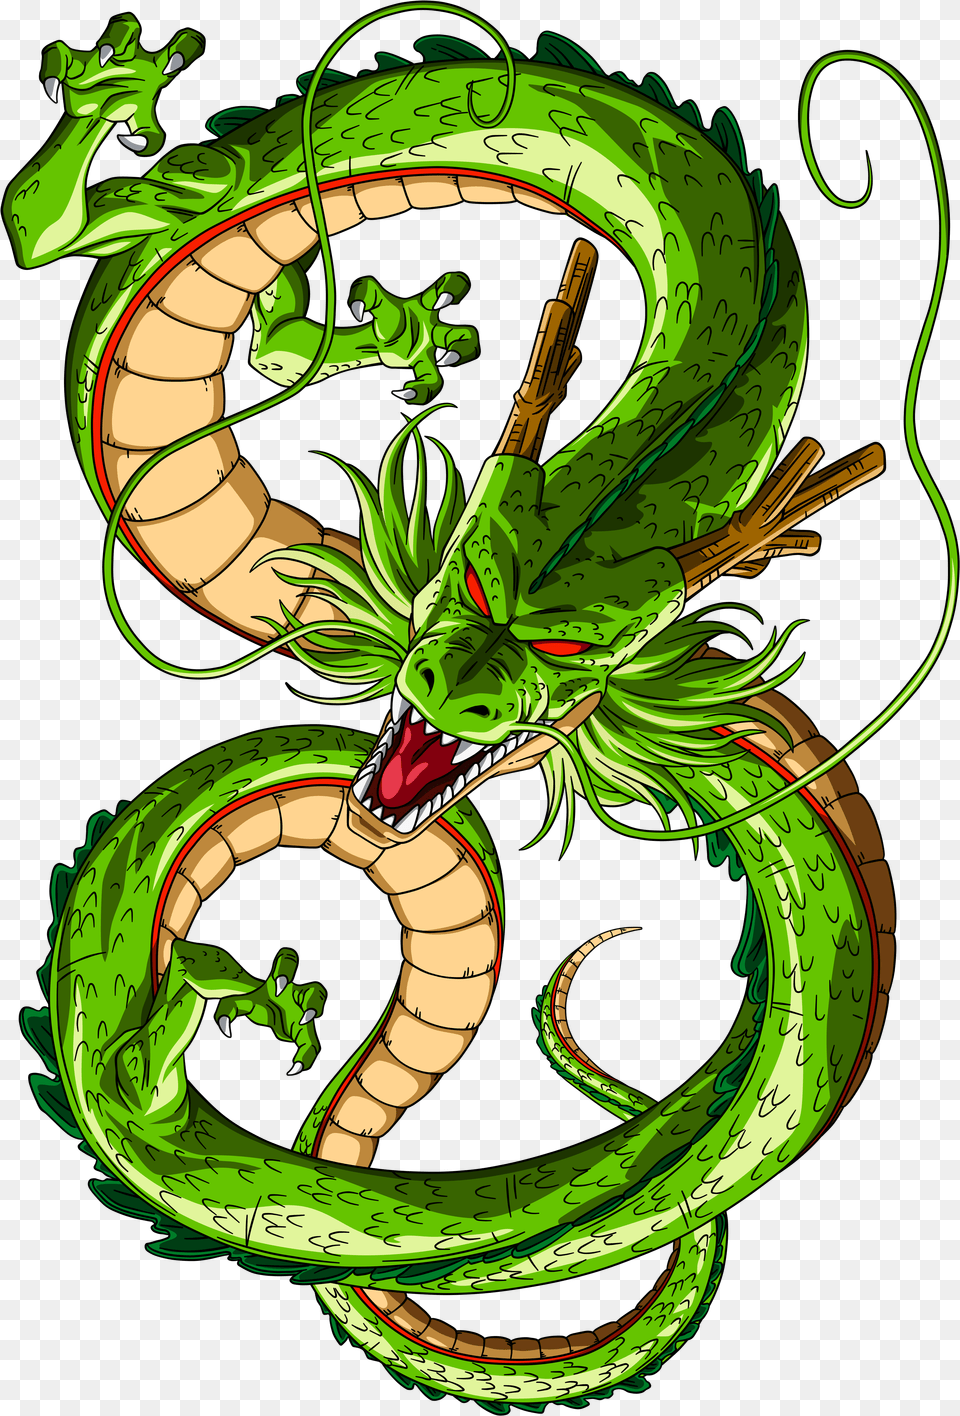 Dragon Ball Z Of Akira Toriyama Character Info Dragon Ball Dragon, Green Png Image